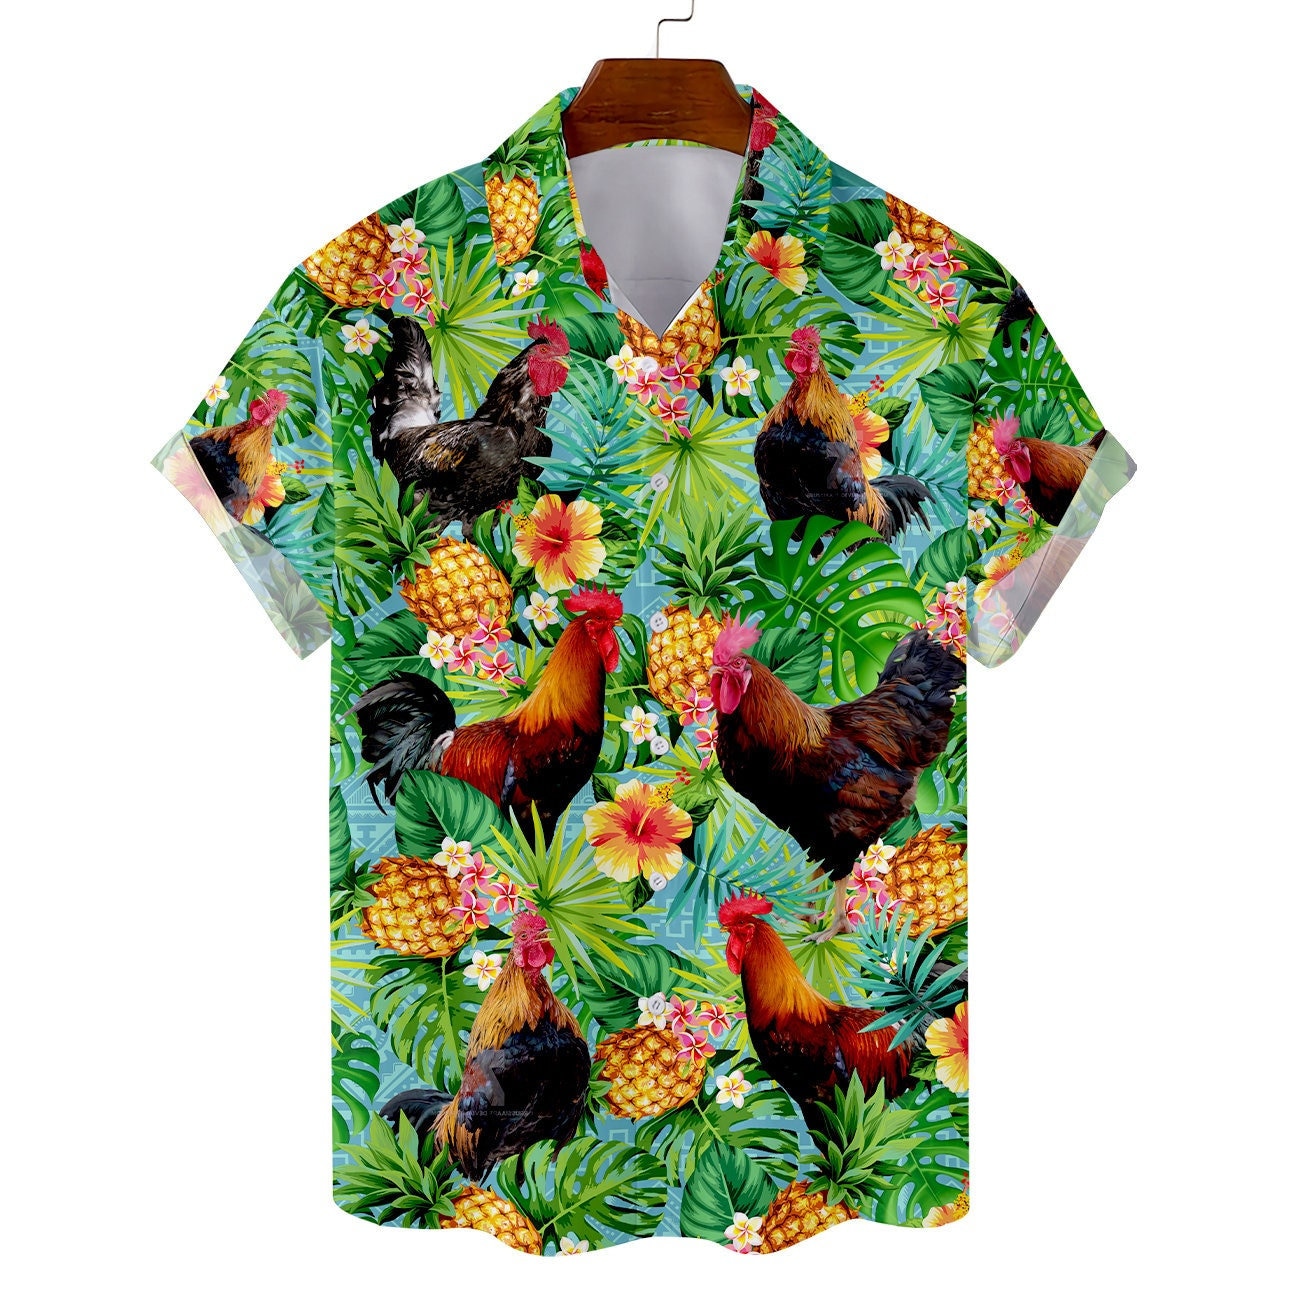 Duck Hawaiian Shirt Pet Lovers Tropical Summer Shirt Short Sleeves Men Women